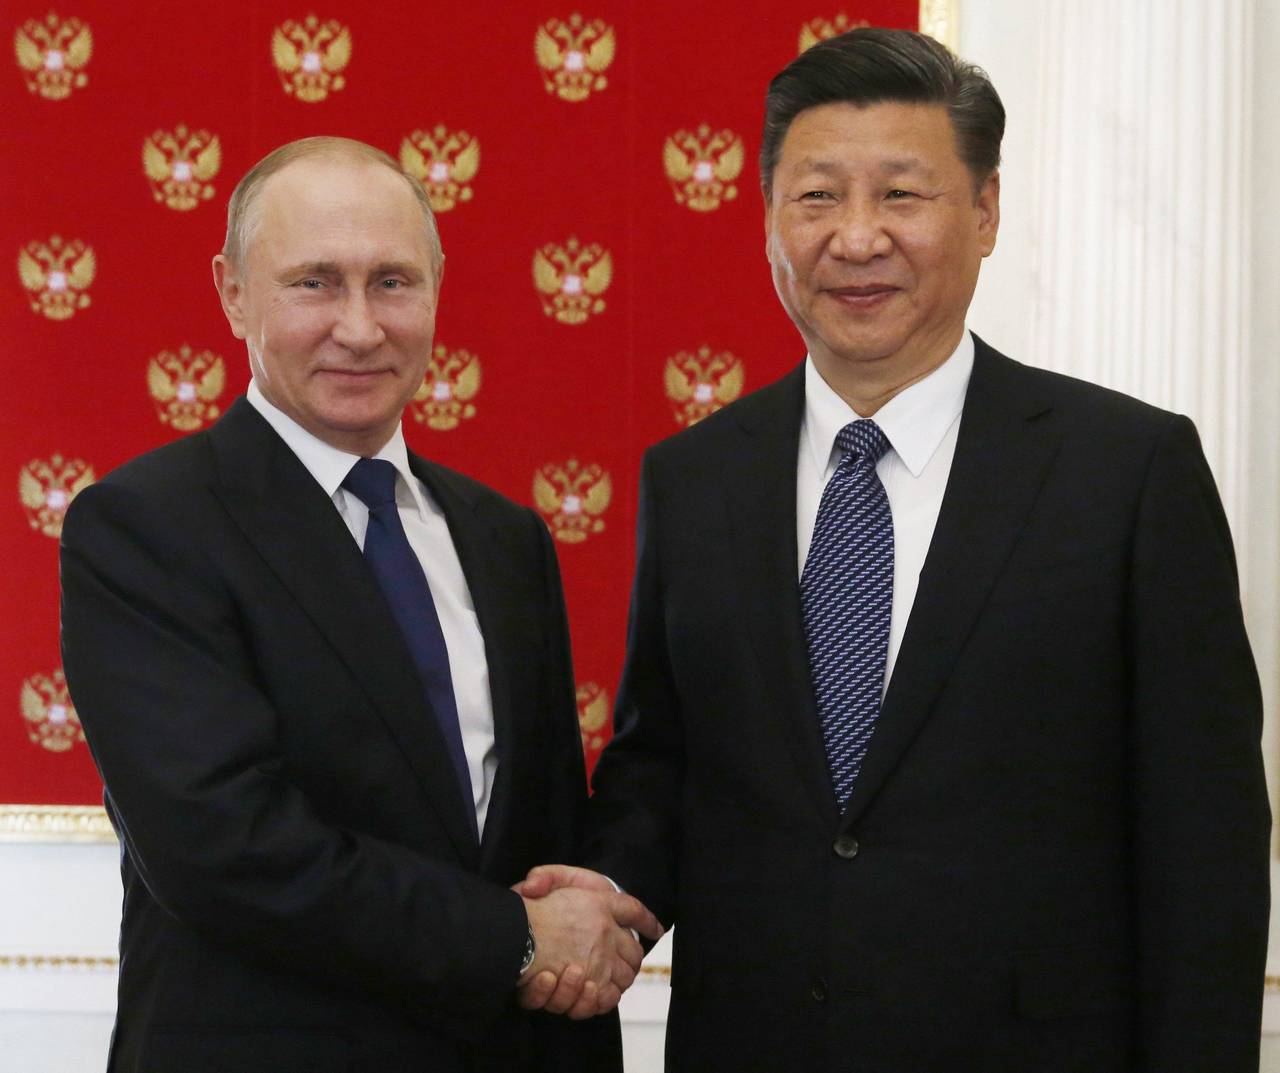 Encuentro. Vladimir Putin (izq.) dio la bienvenida a Xi en el Kremlin, donde ambos cenaron.